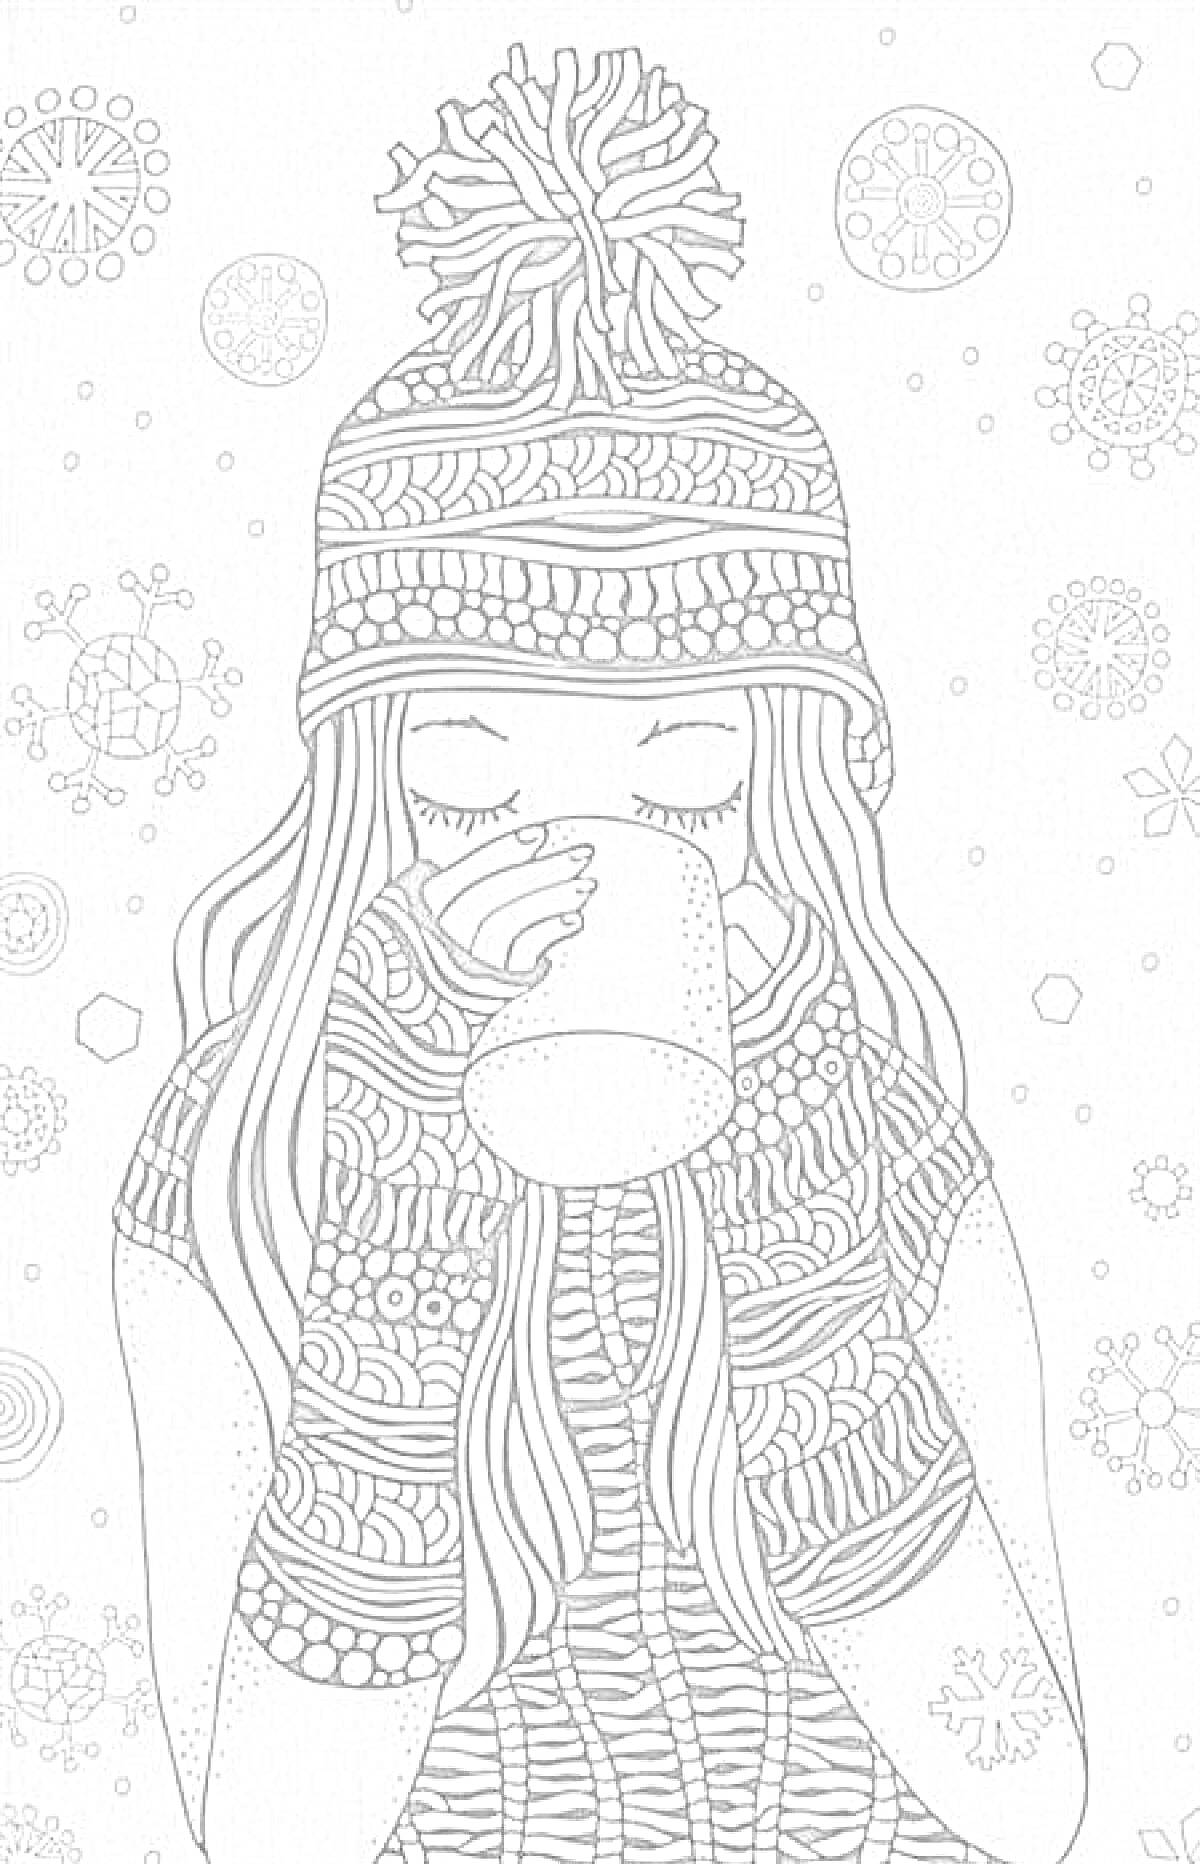  Девушка в зимней шапке и варежках с кружкой чая на фоне снежинок